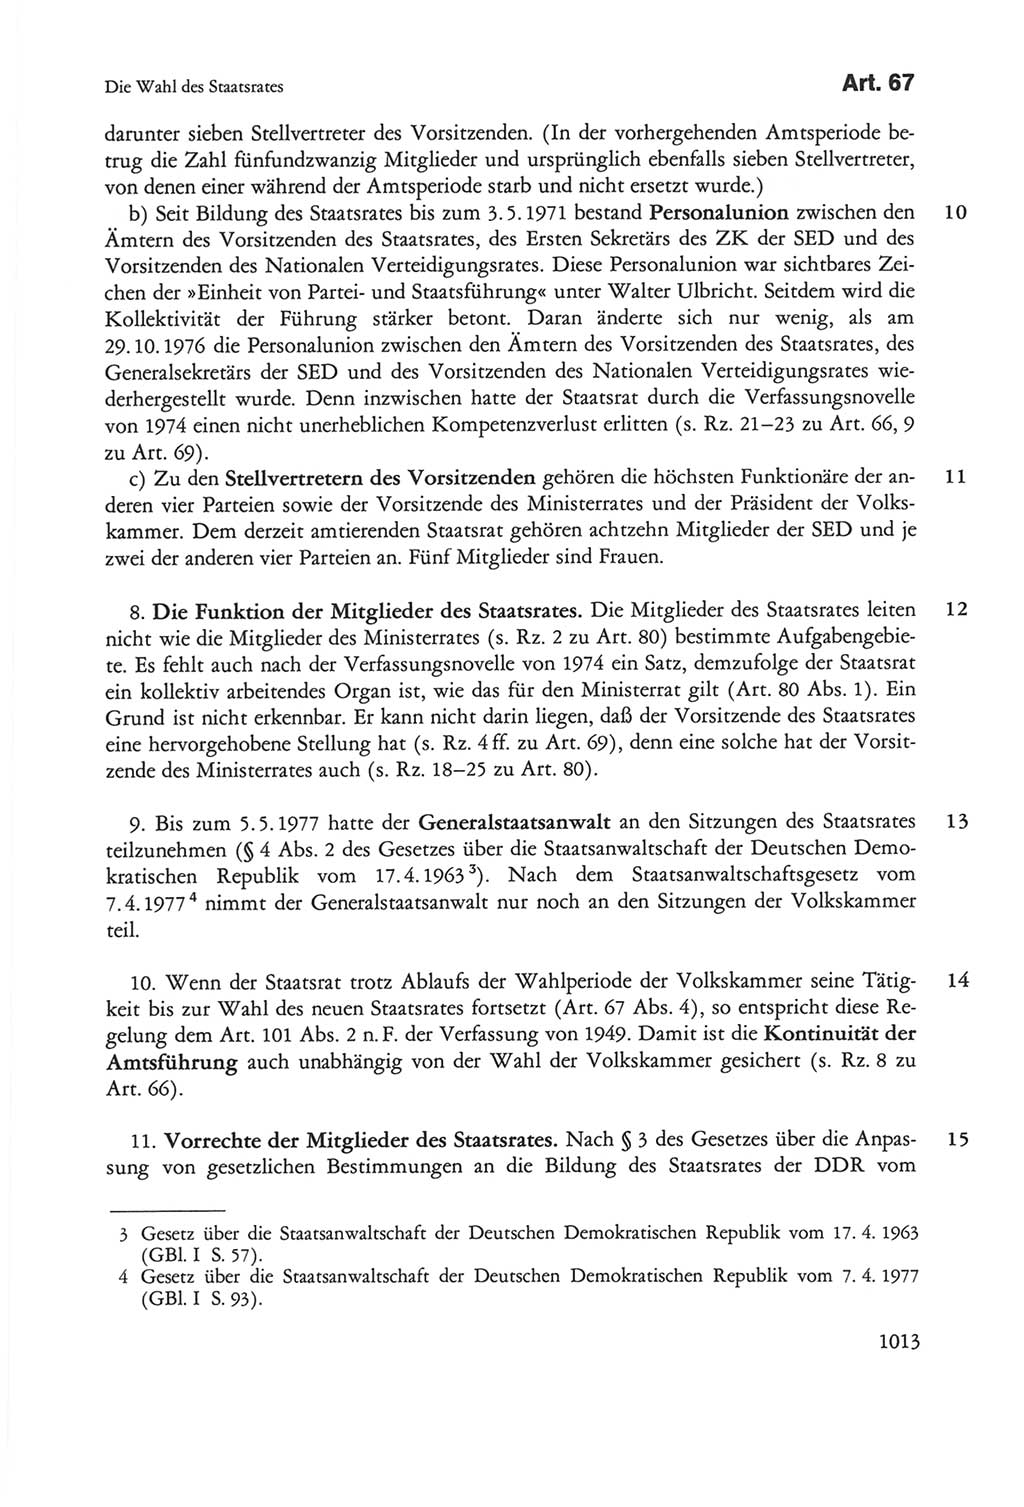 Die sozialistische Verfassung der Deutschen Demokratischen Republik (DDR), Kommentar mit einem Nachtrag 1997, Seite 1013 (Soz. Verf. DDR Komm. Nachtr. 1997, S. 1013)